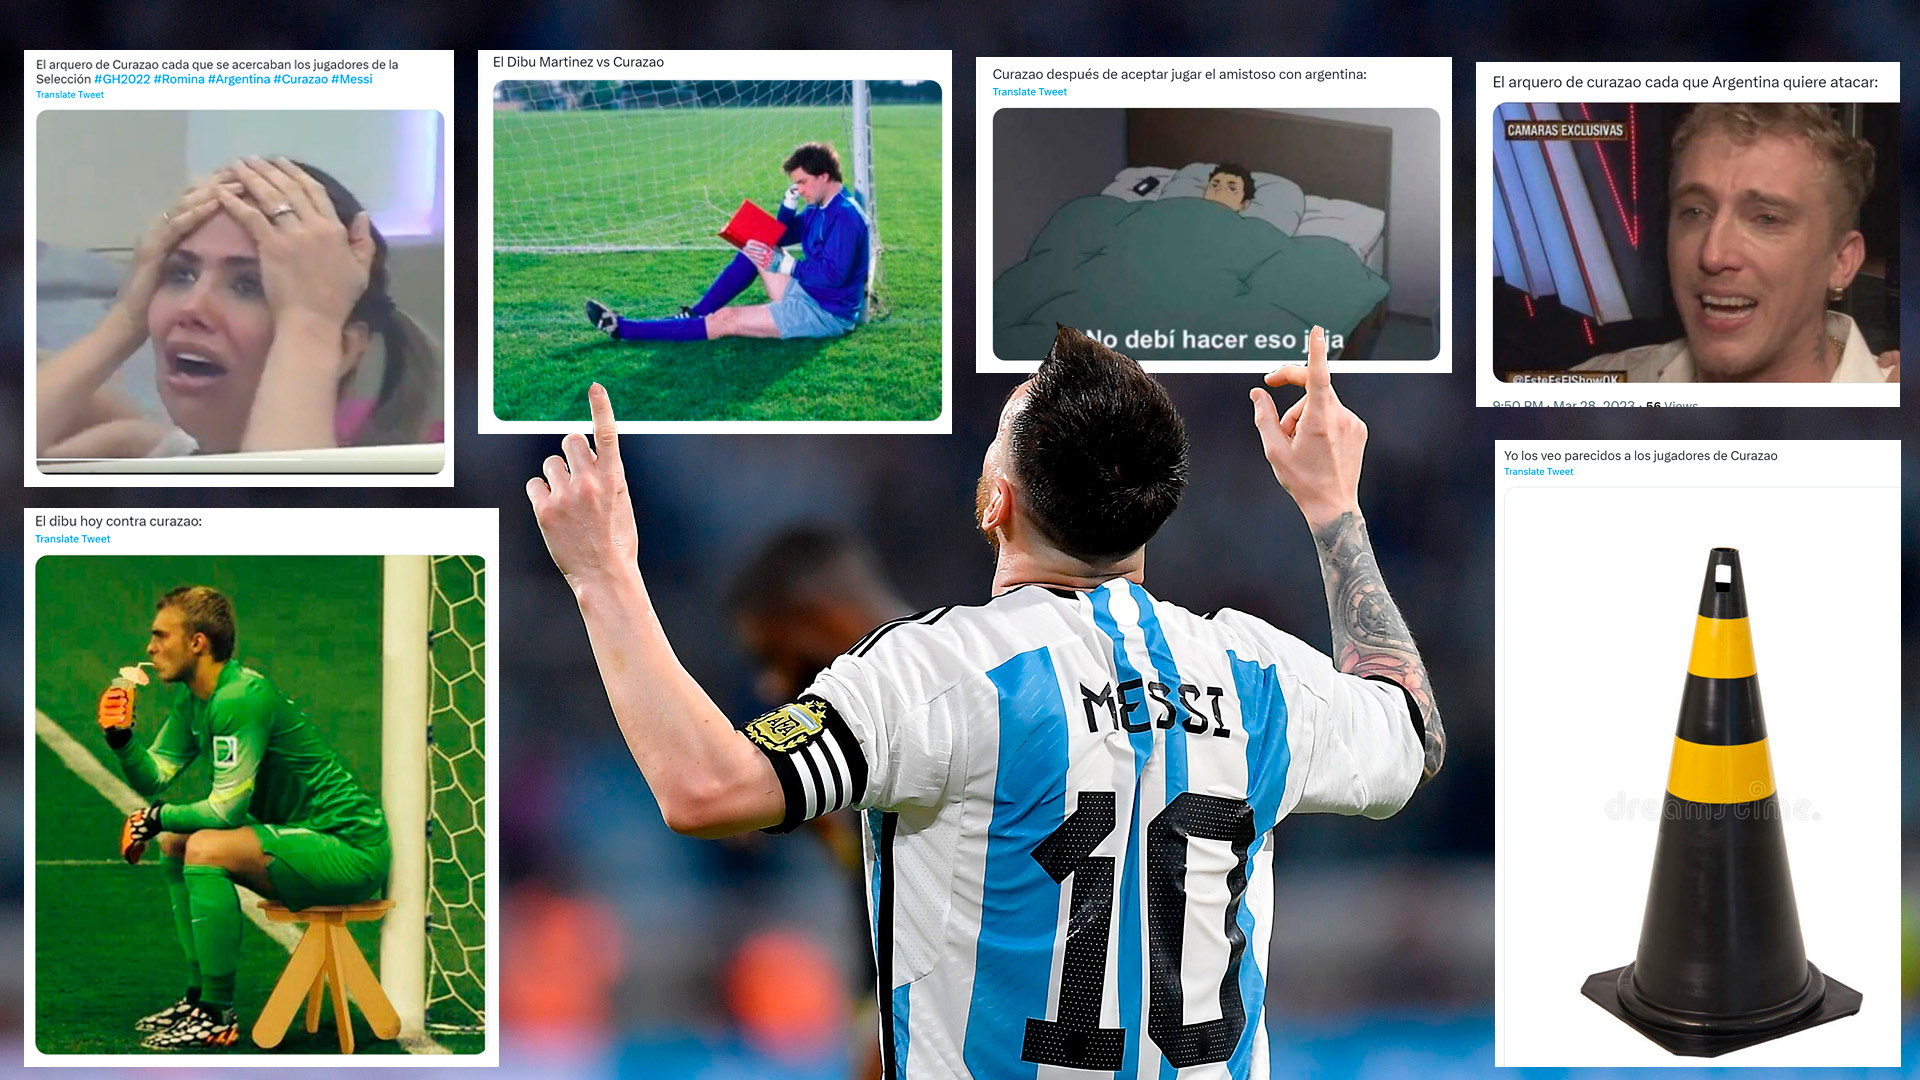 Los mejores memes de la goleada de Argentina ante Curazao: de la “siesta” de Dibu Martínez al sufrimiento del arquero centroamericano